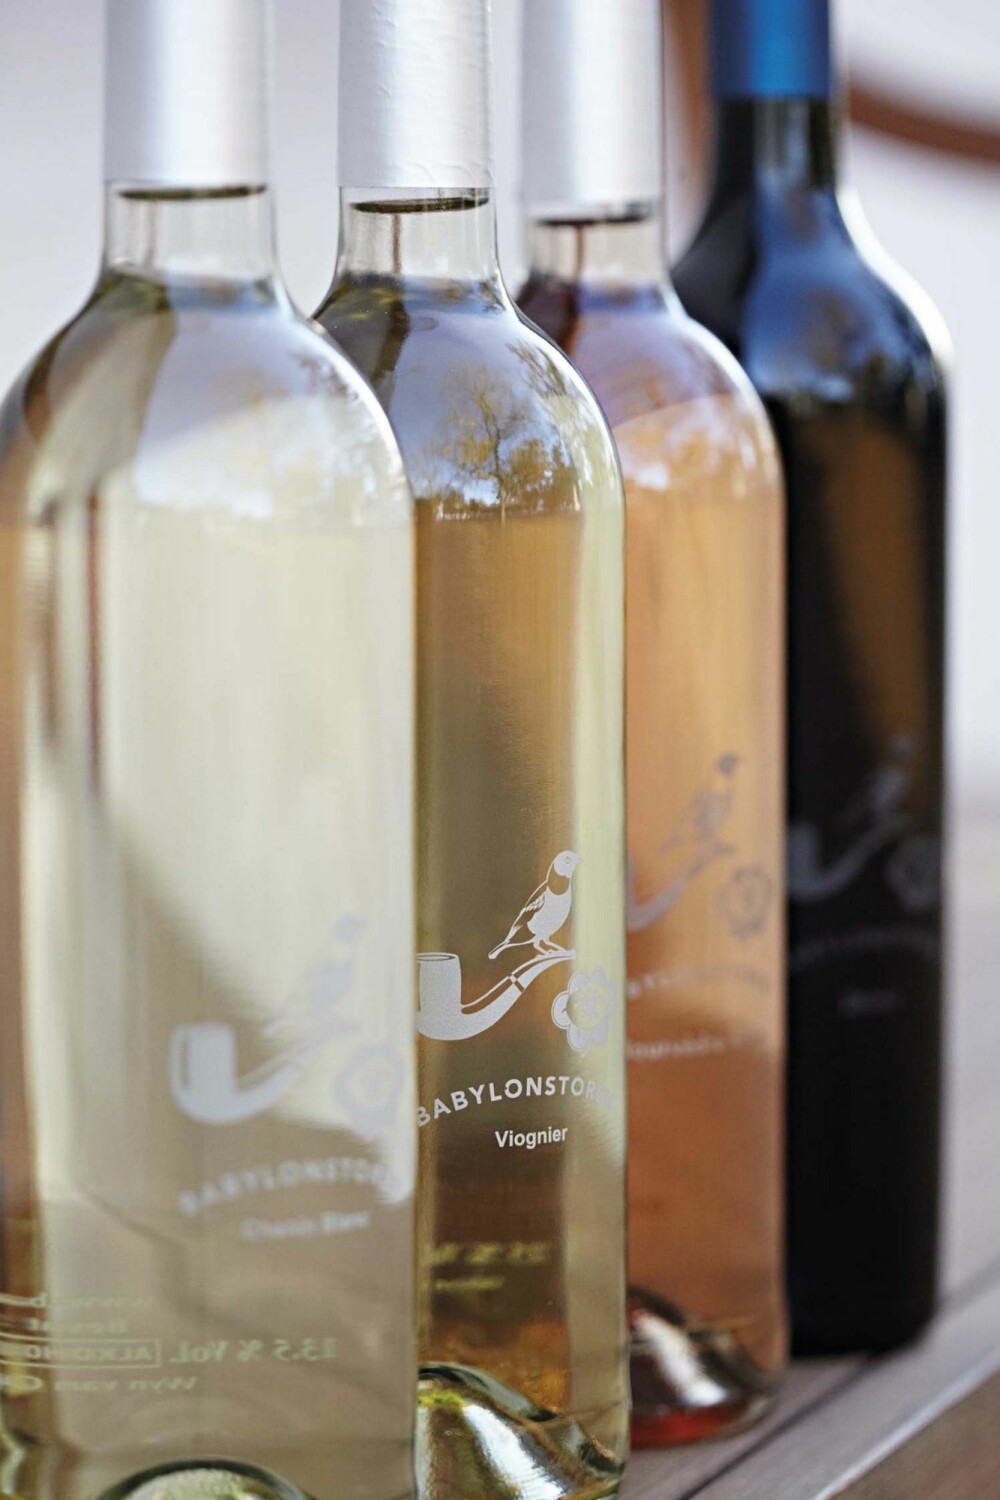 BREDT UTVALG: Chenin Blanc, Viognier, Mourverde Rose og Shiraz er noen av vinsortene produsert på Babylonstoren.